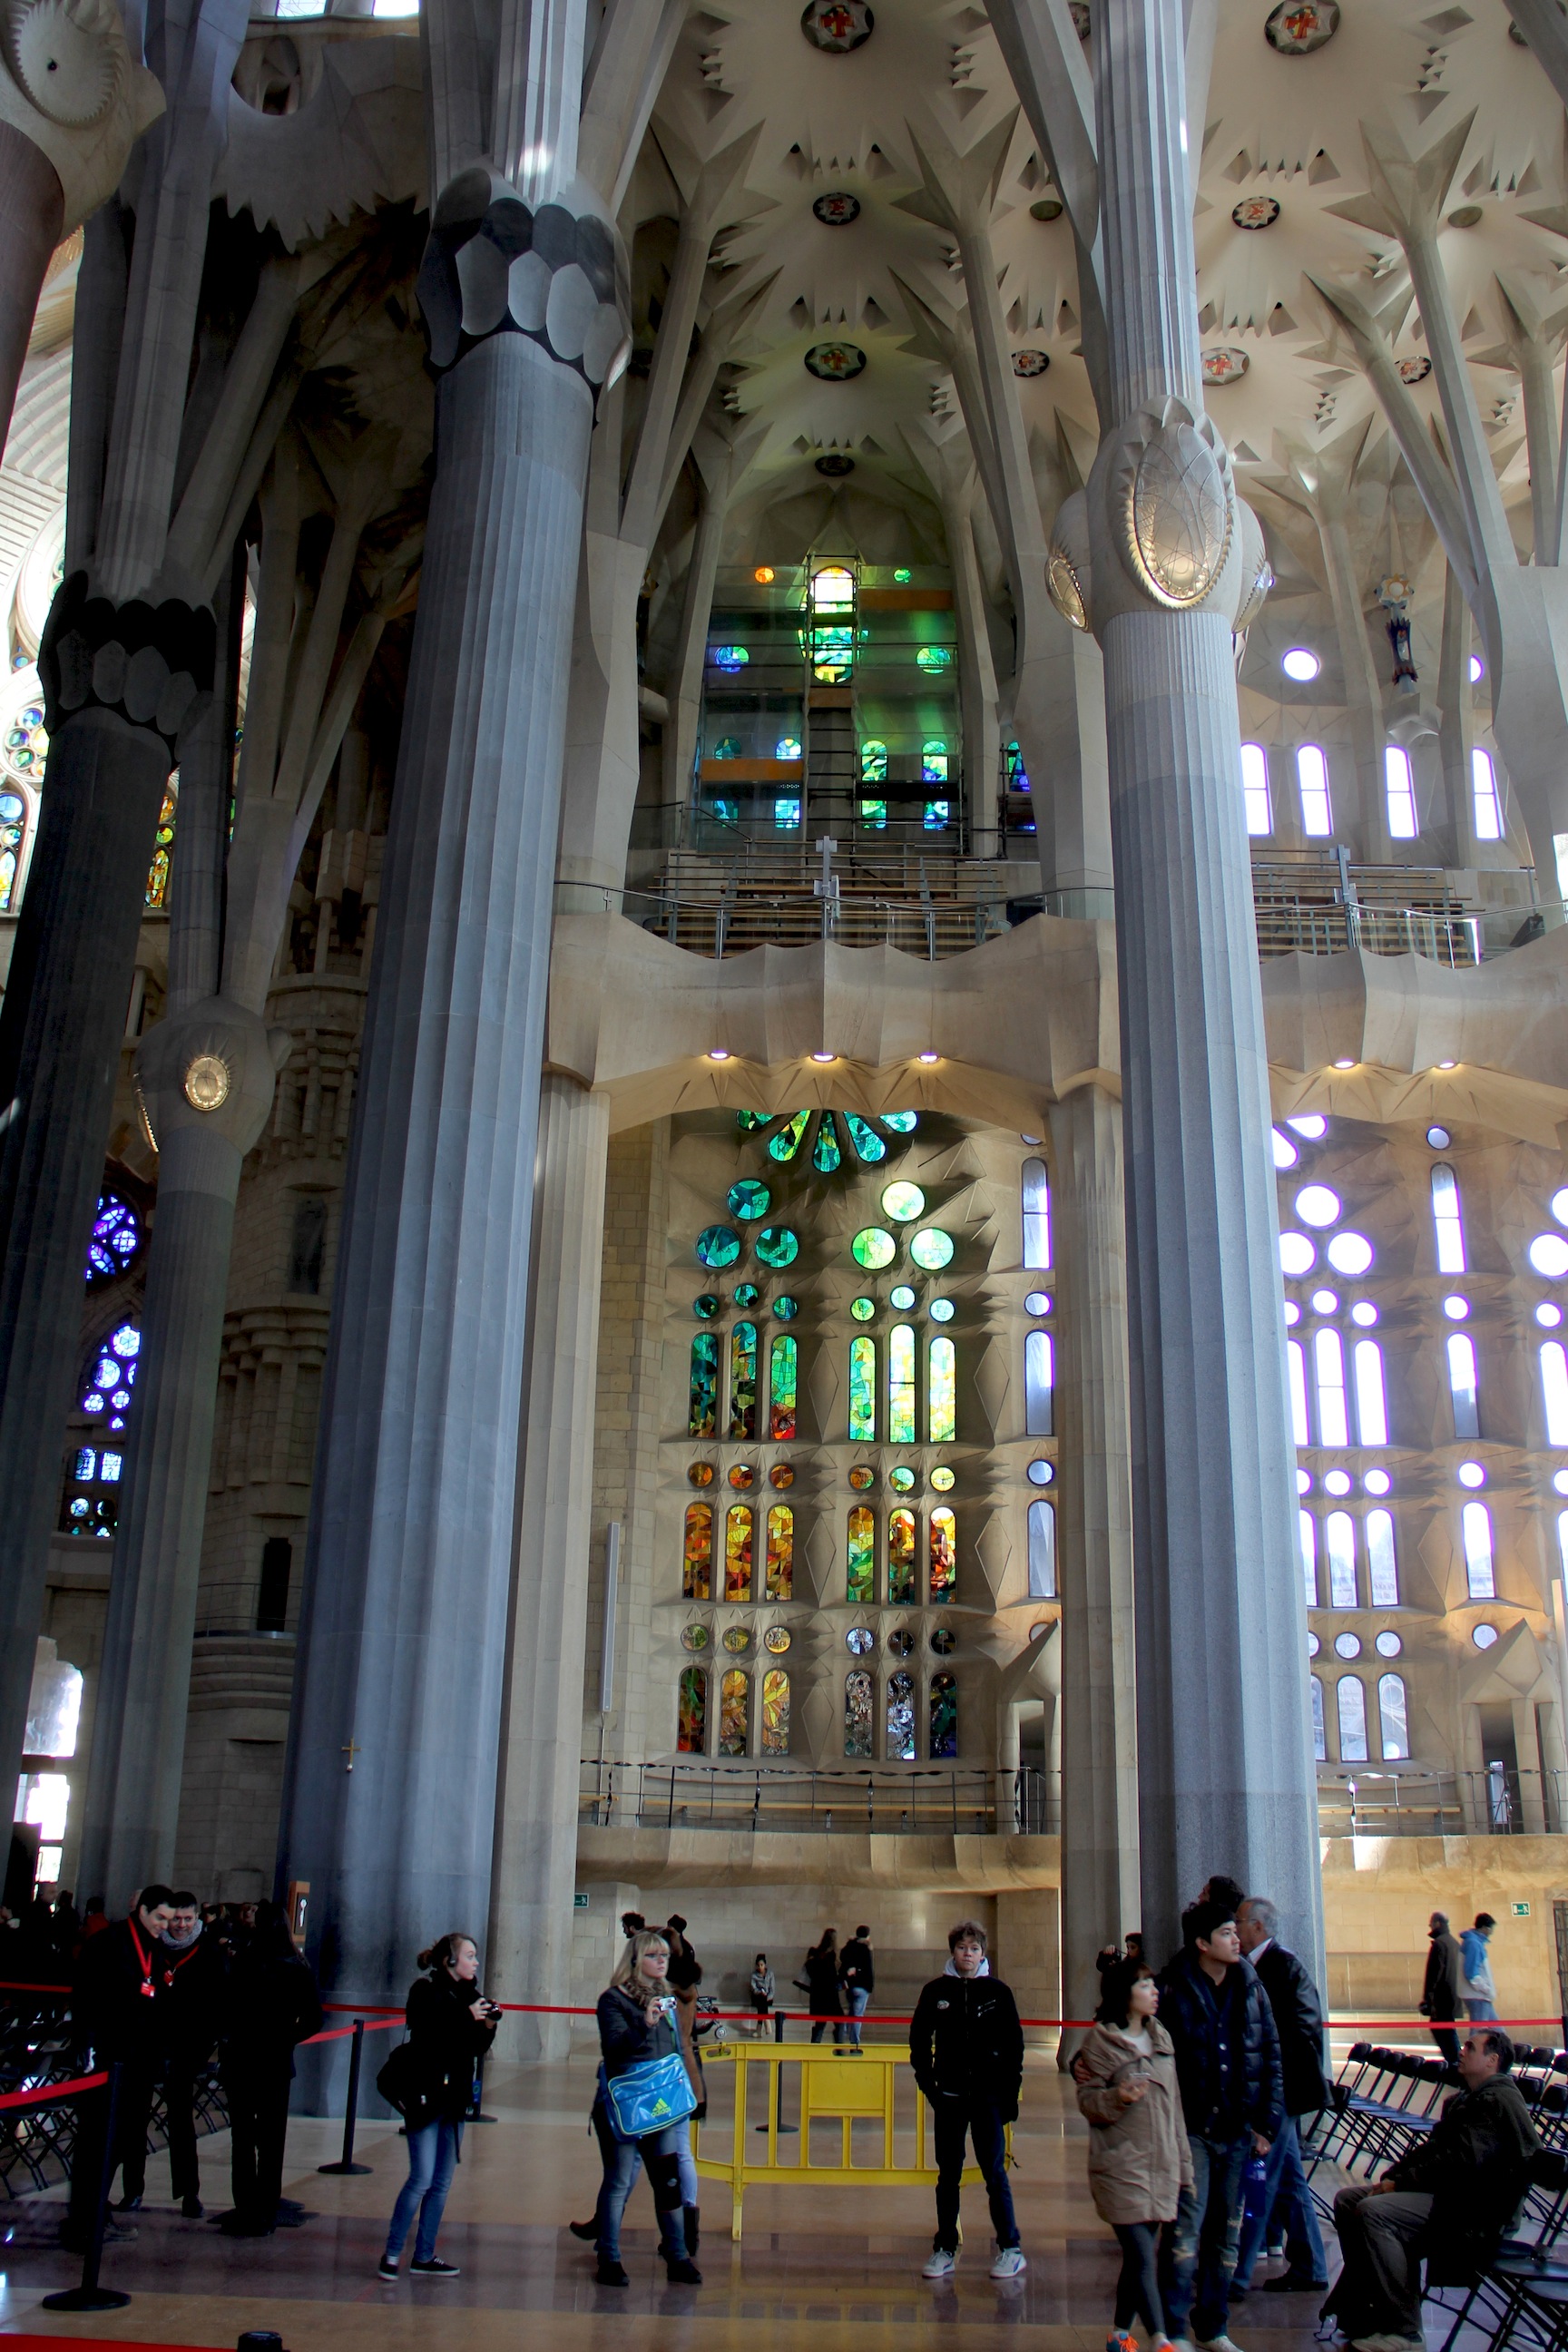 Inside La Sagrada Familia
